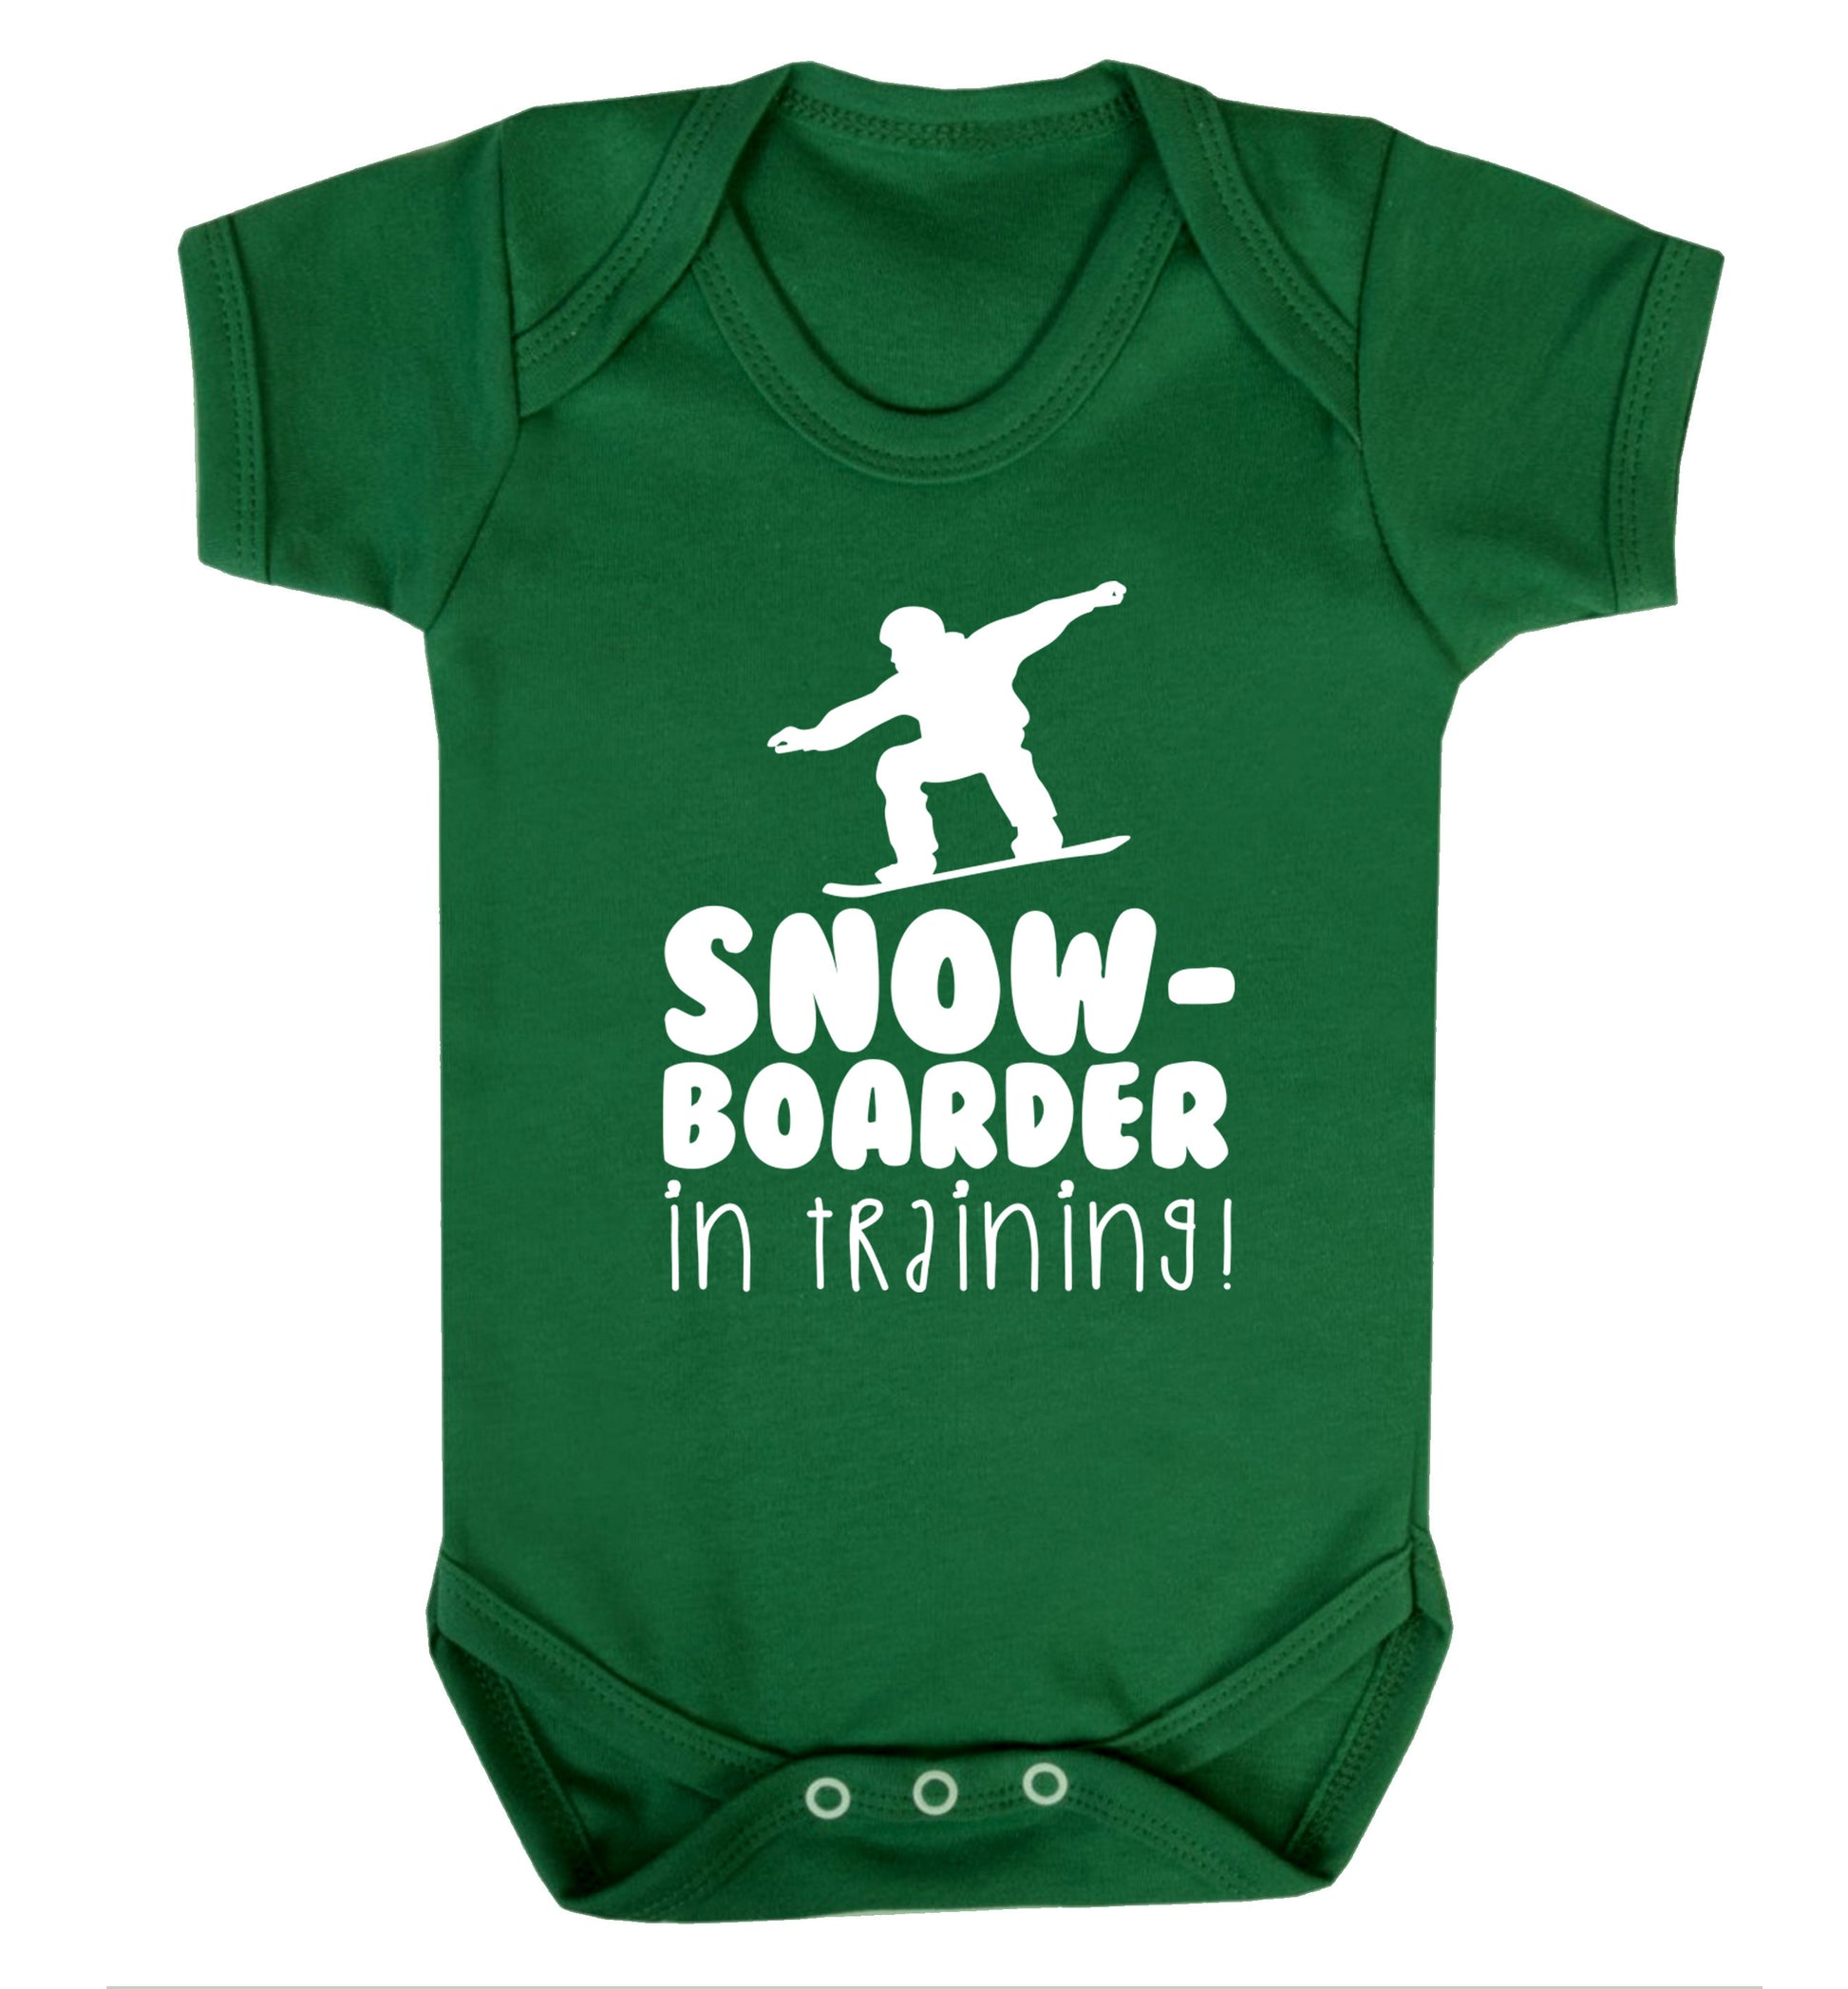 Snowboarder in training Baby Vest green 18-24 months